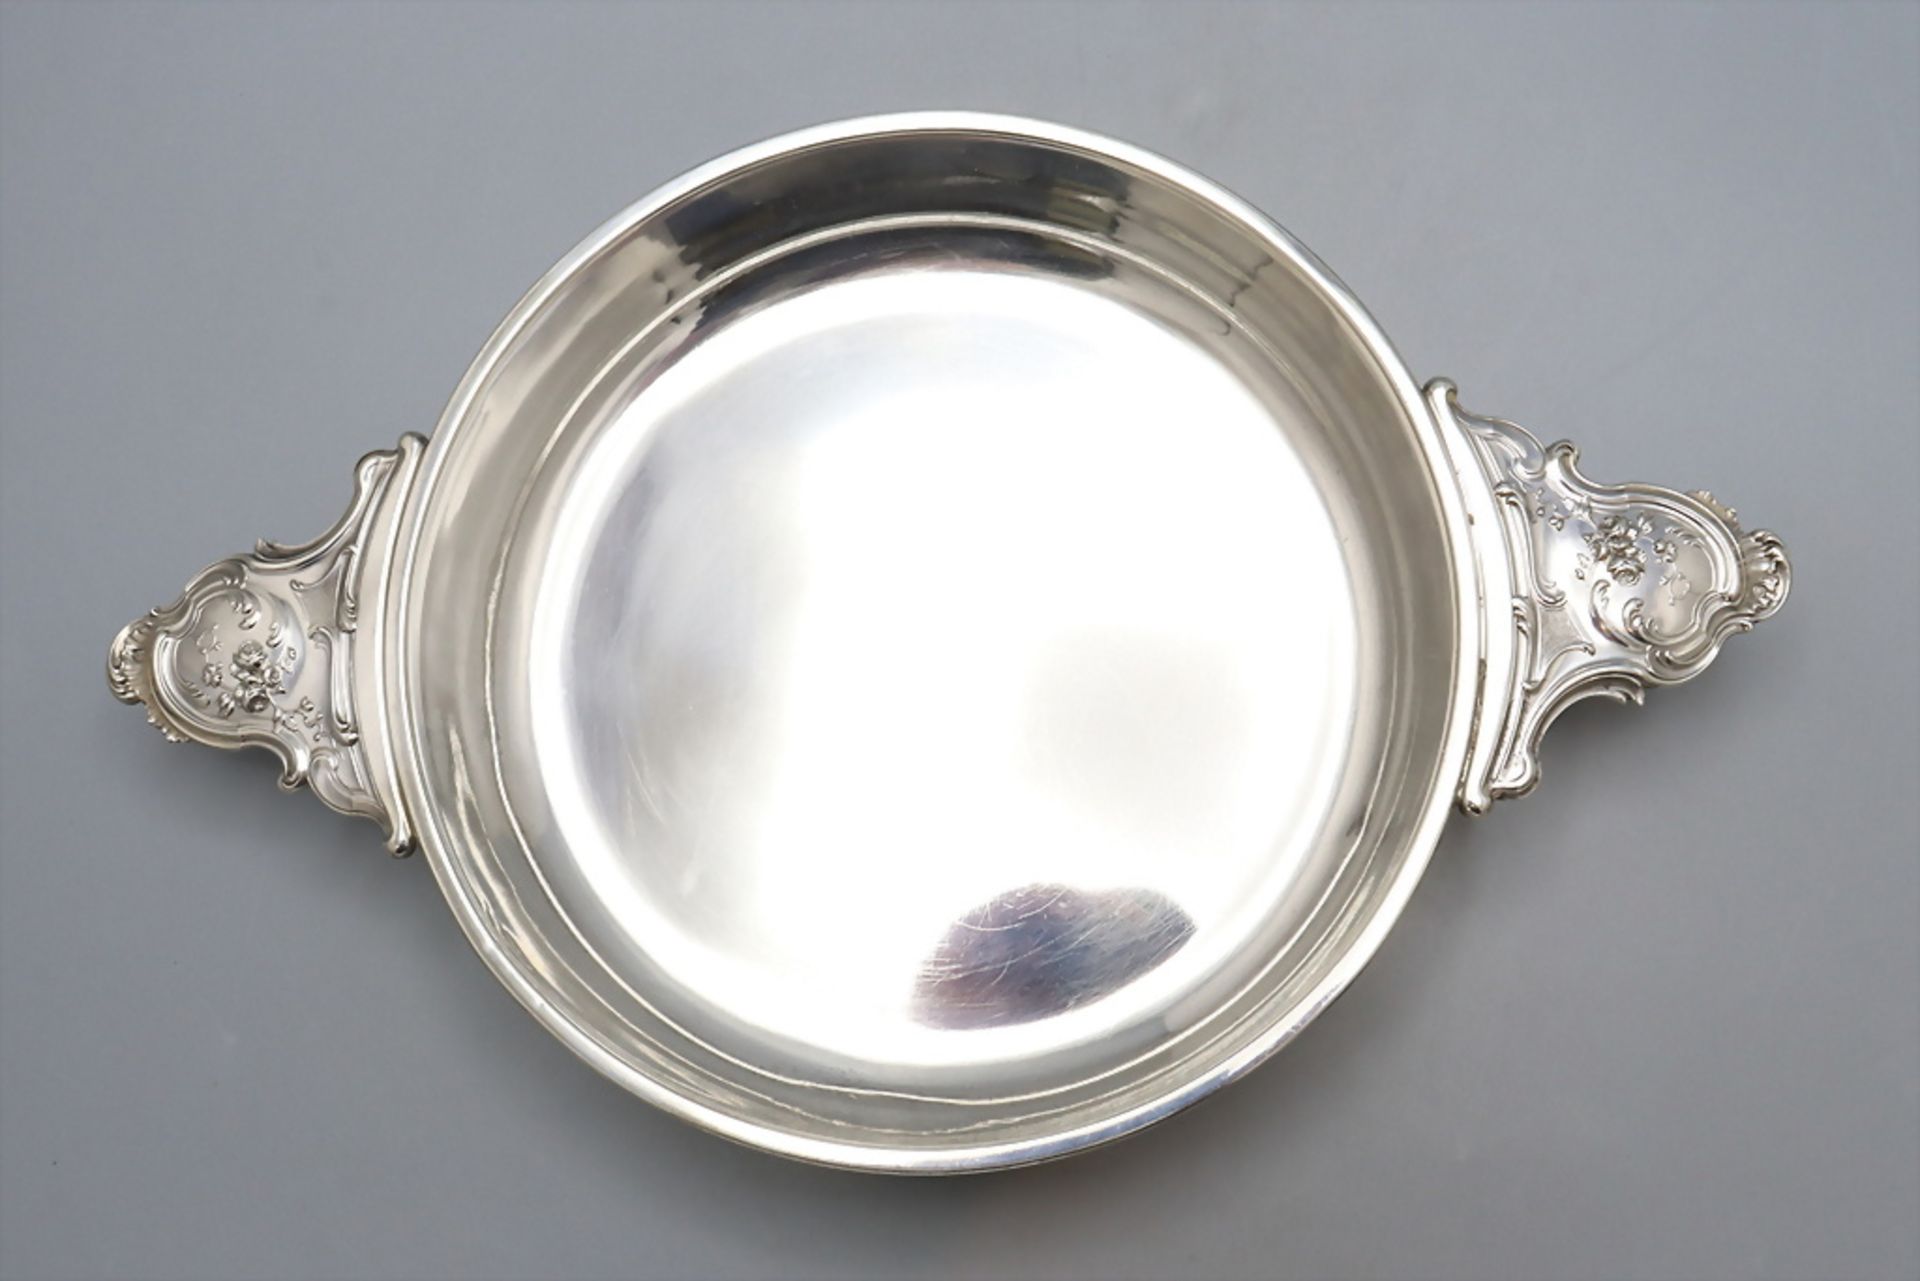 Silberschale mit Handhaben / A silver bowl with handles, Alphonse Debain, Paris, um 1900 - Image 2 of 5